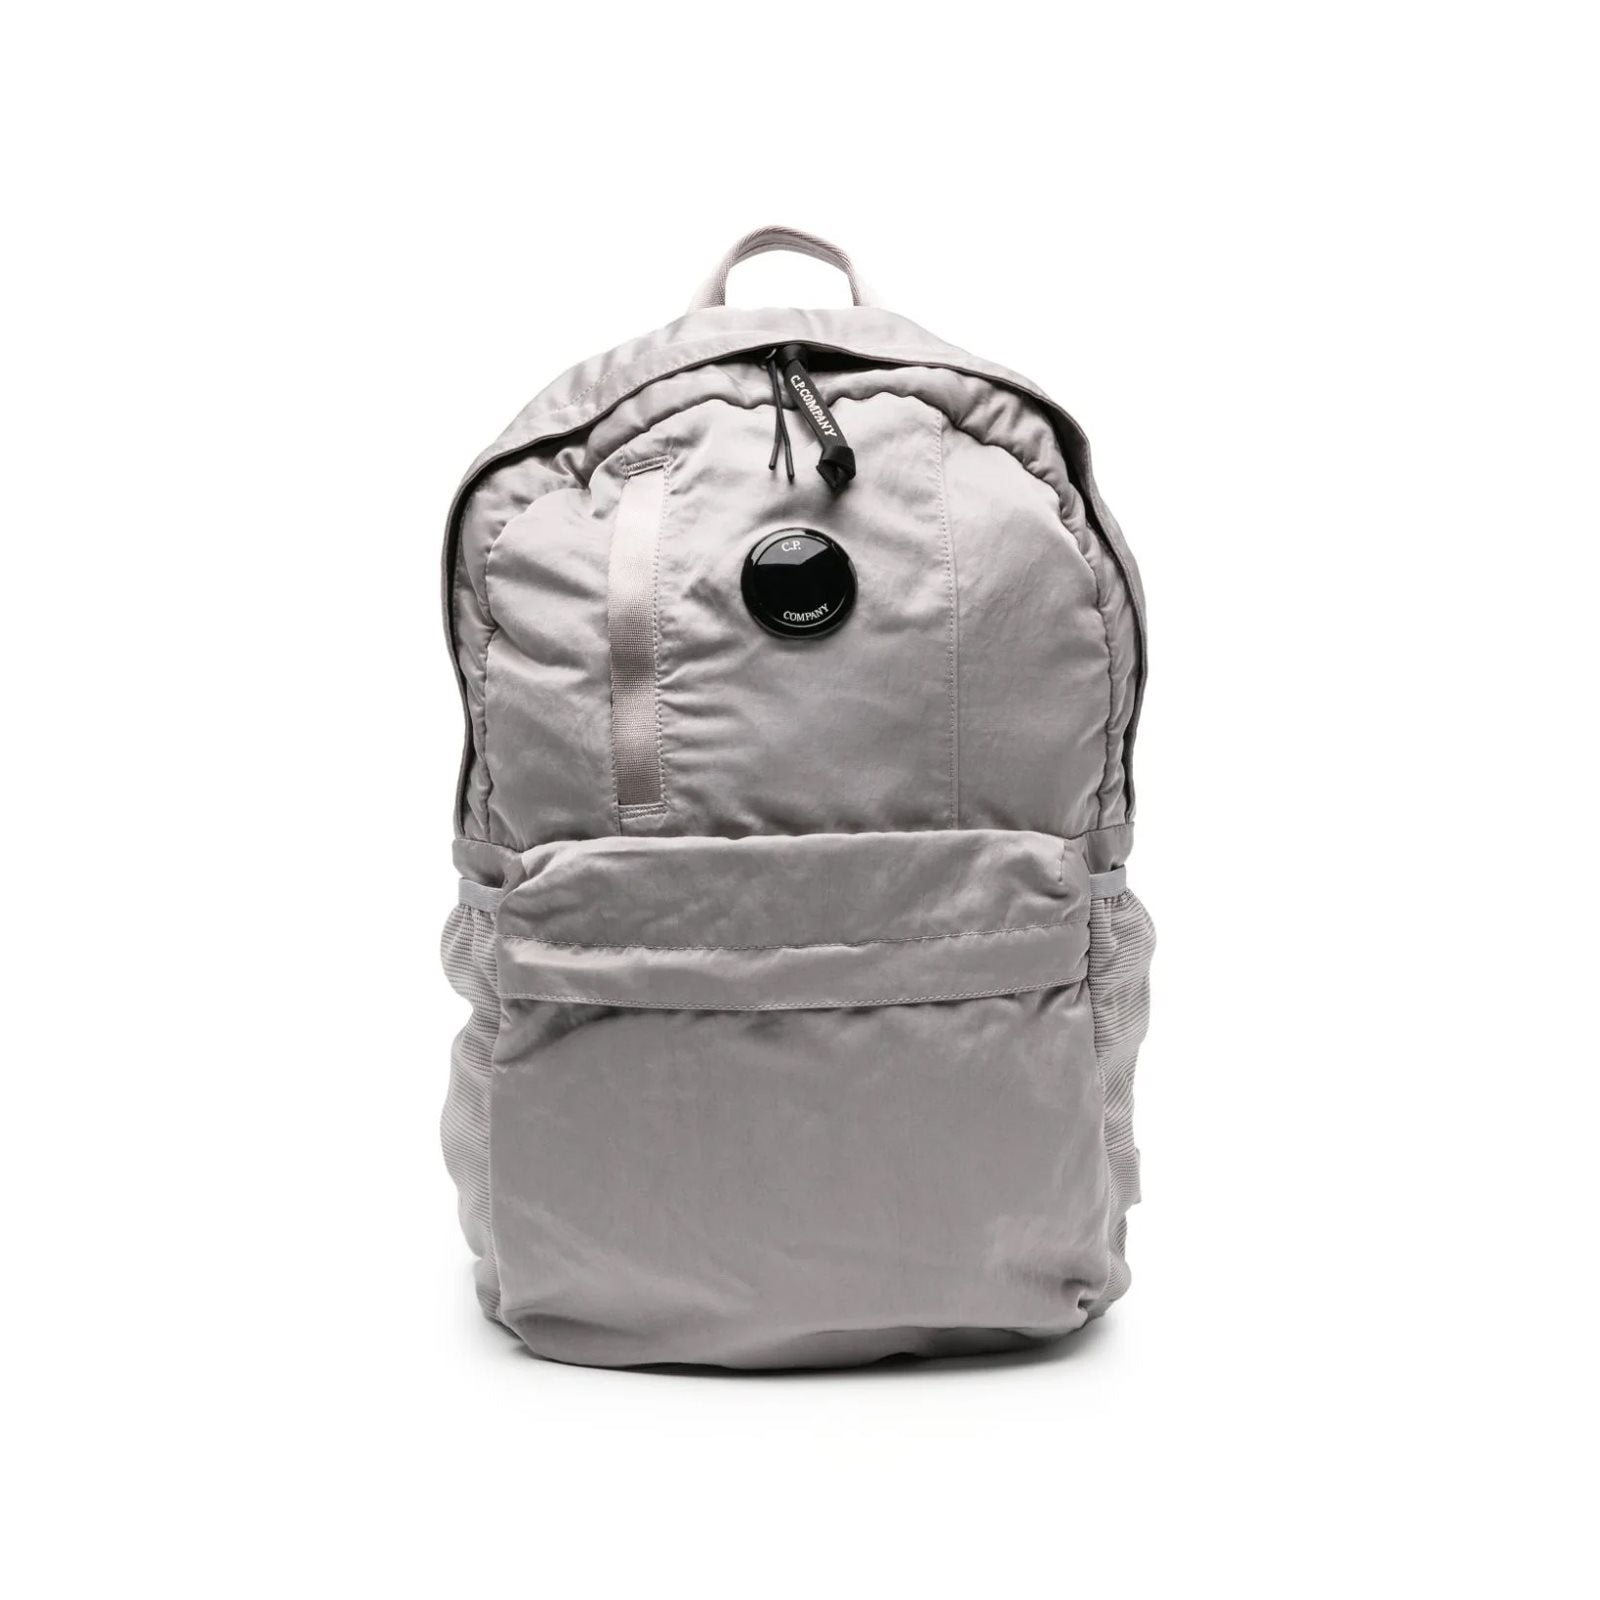 Nylon backbag